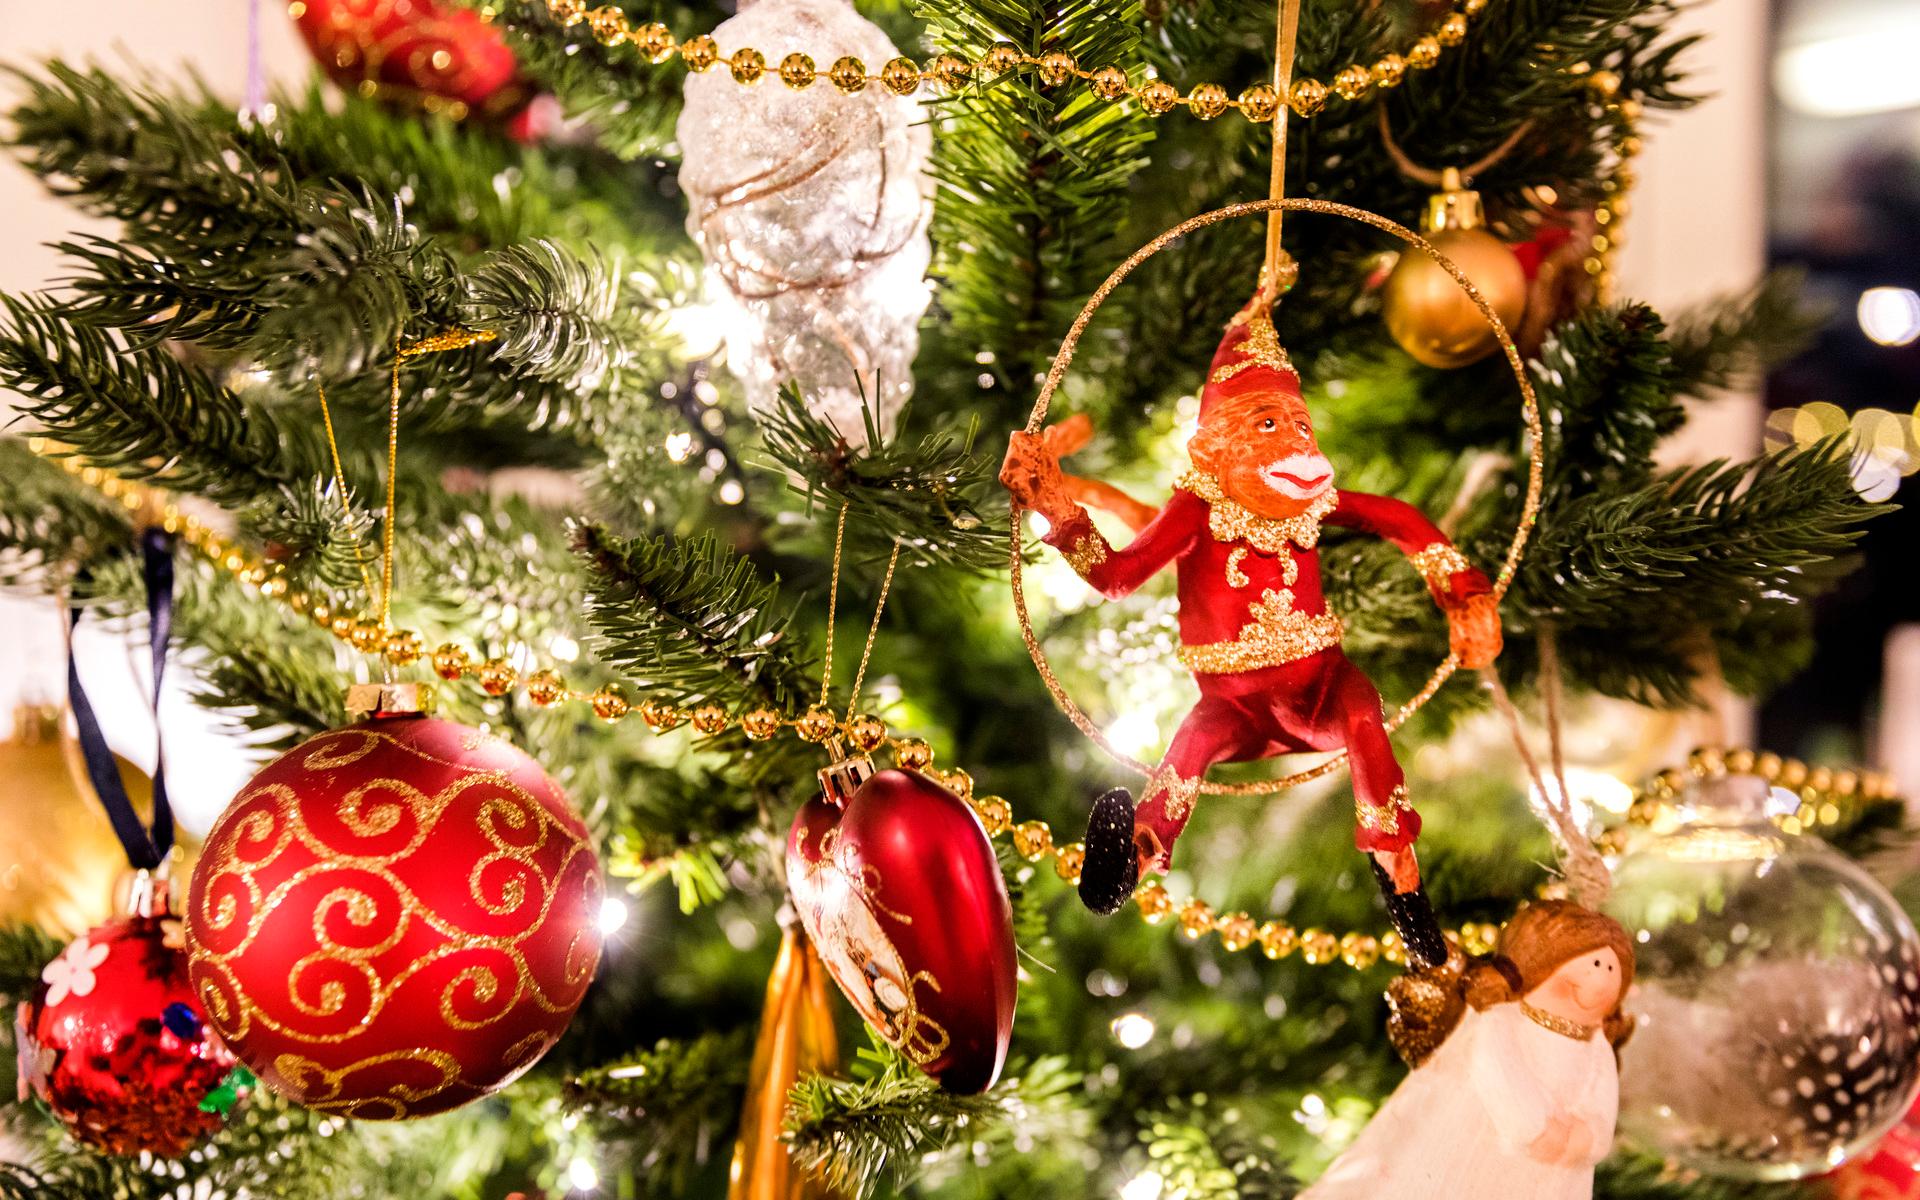 Den första julgranen ska ha myntats i Tyskland i början av 1500-talet.